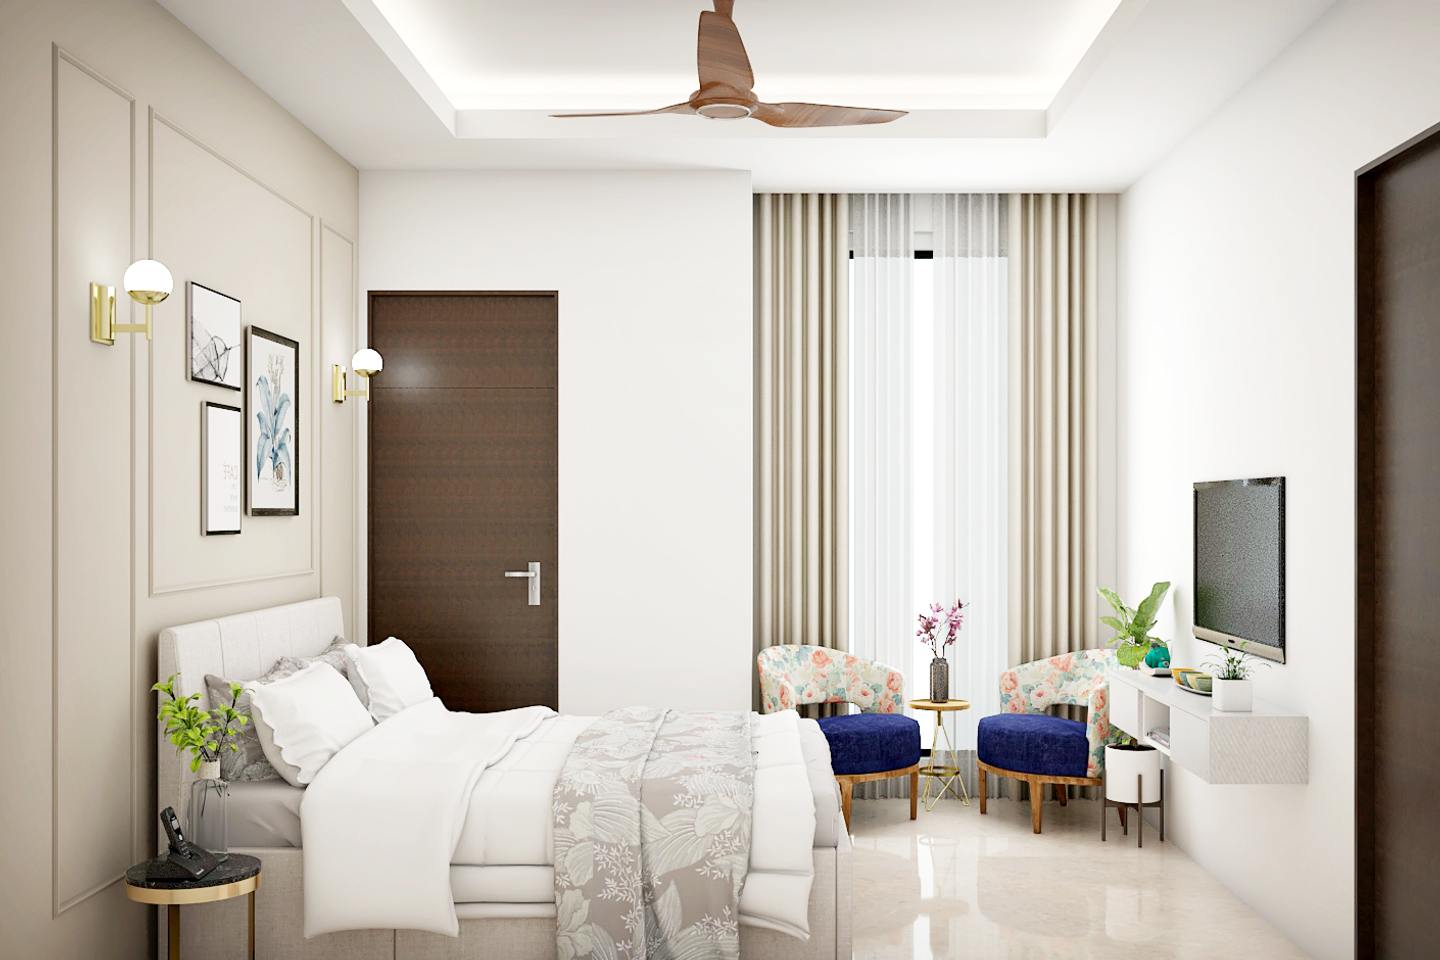 White Master Bedroom Design - Livspace